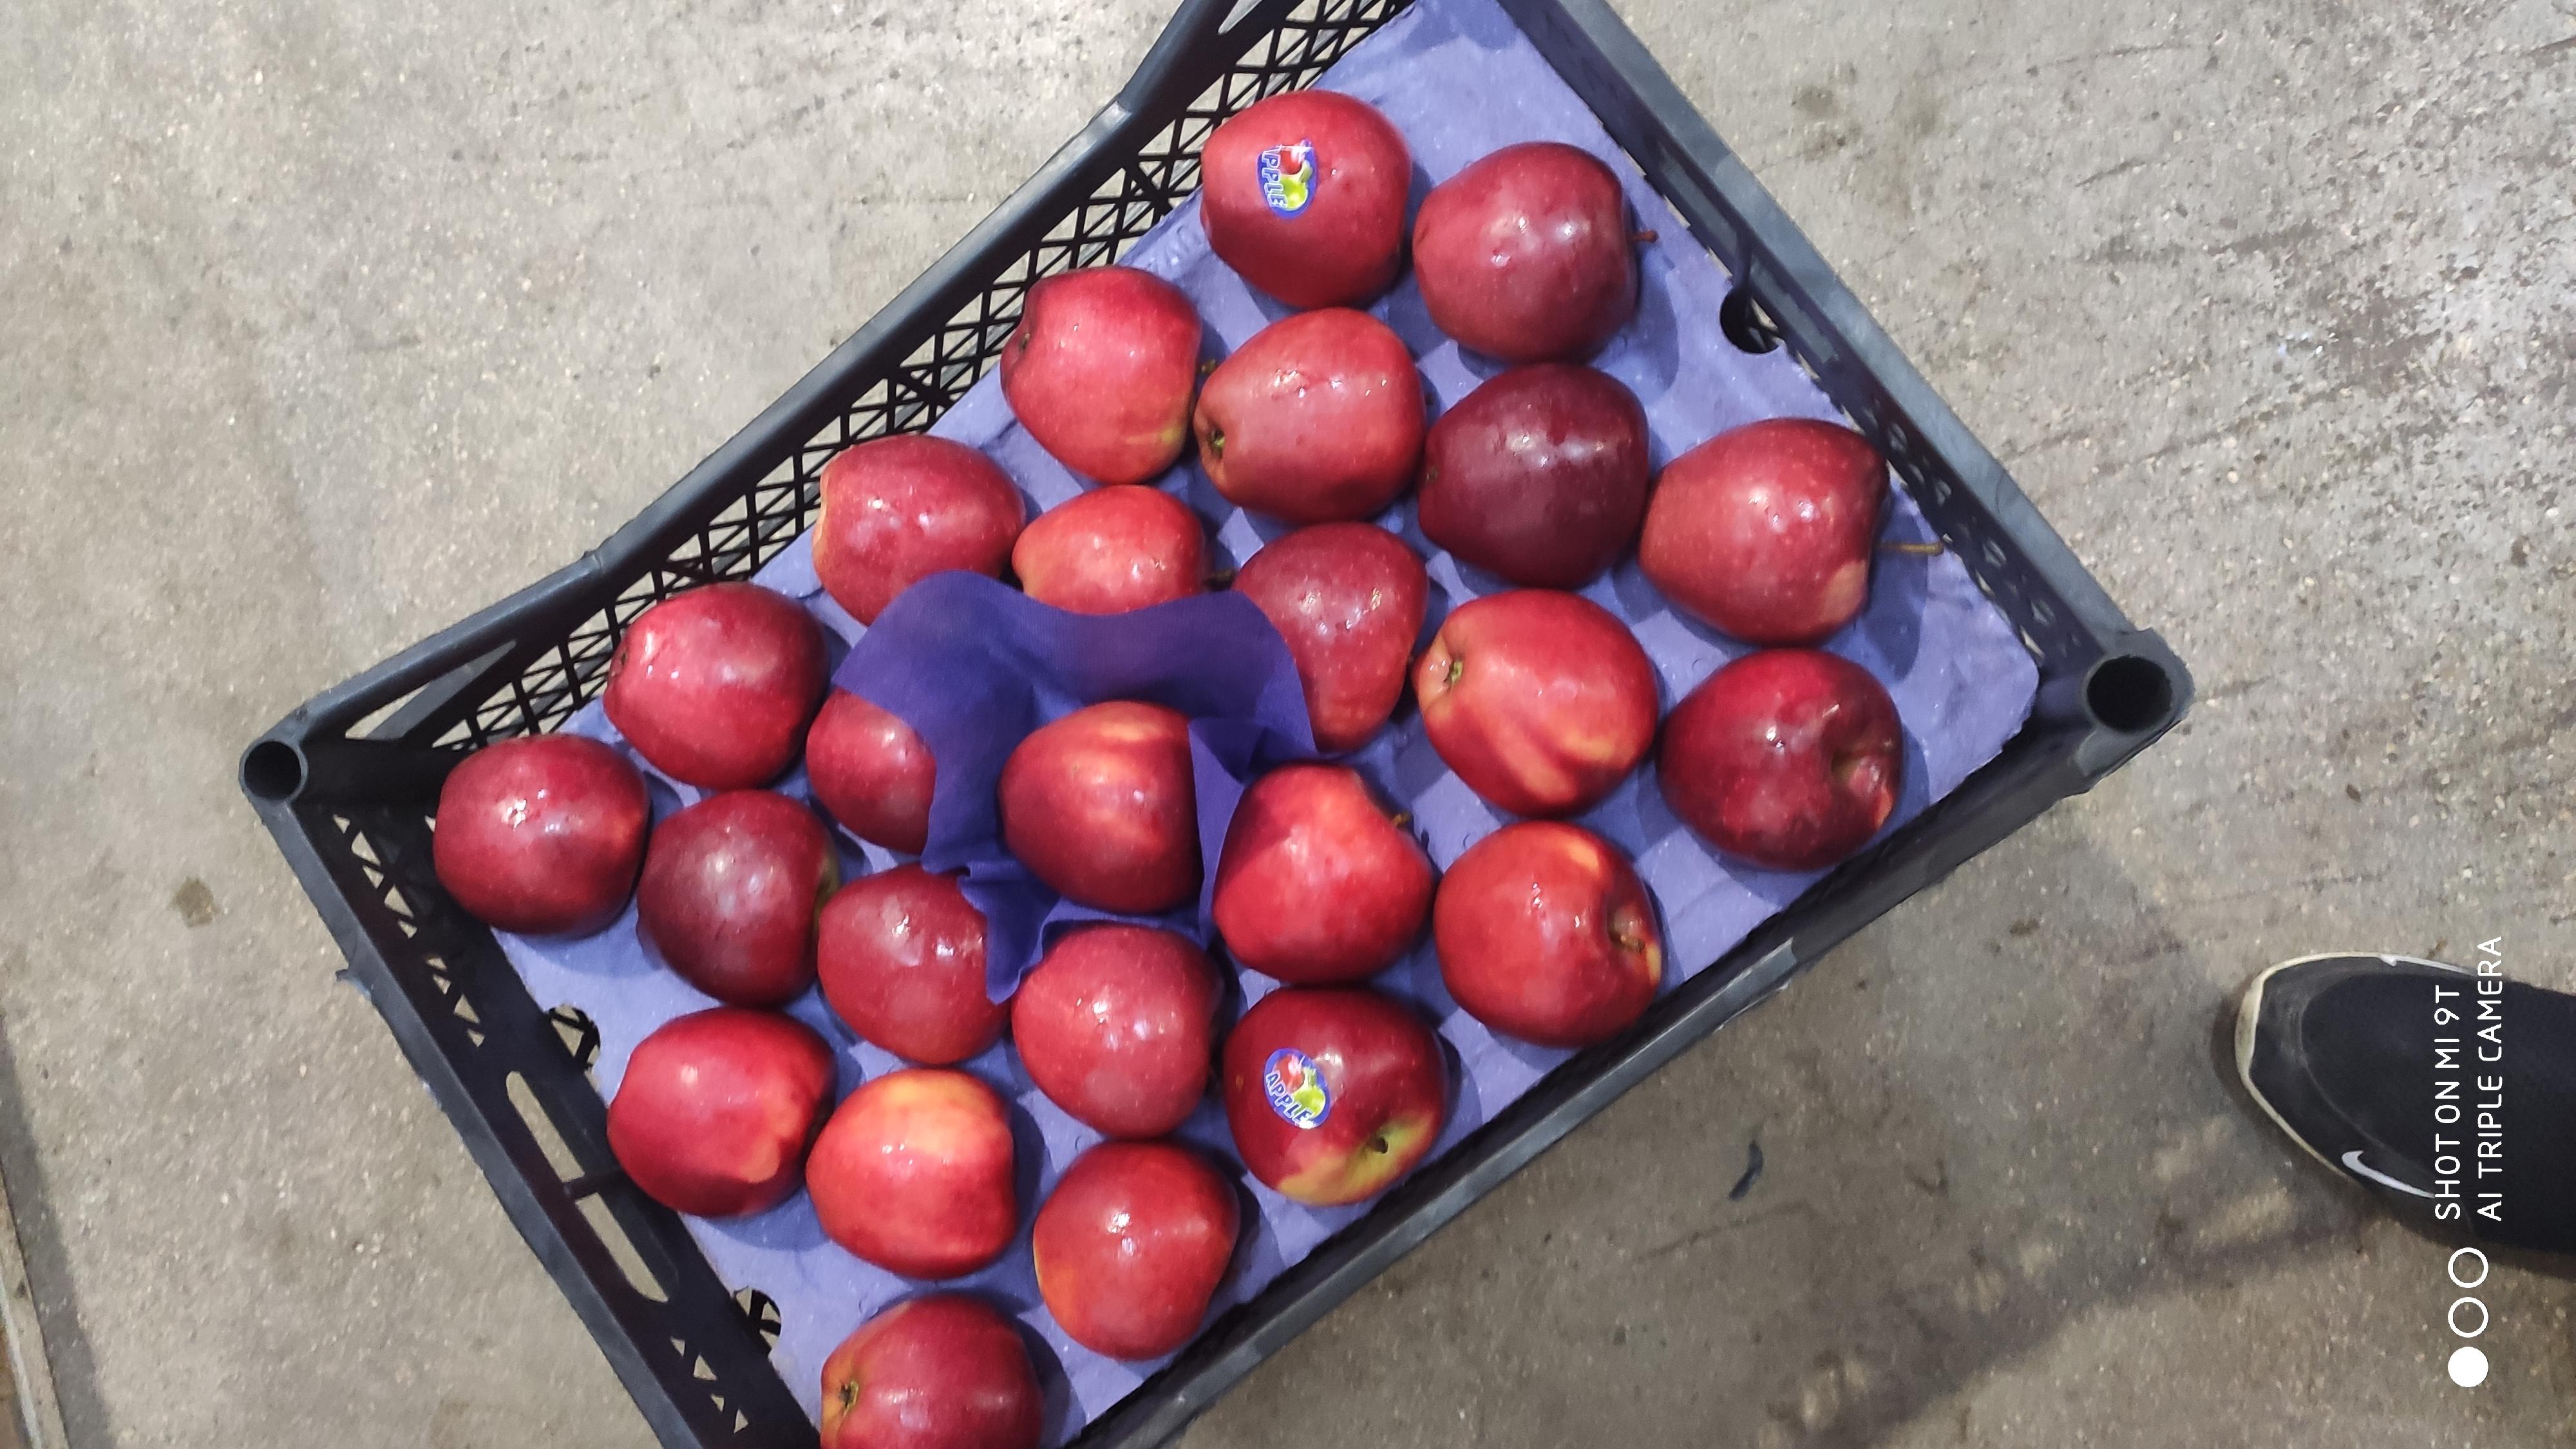 Elma - Ercan Kara tarafından verilen satılık red chıef çeşidi elma  ilanını ve diğer satılık elma ilanlarını tarimziraat.com adresinde bulabilirsiniz